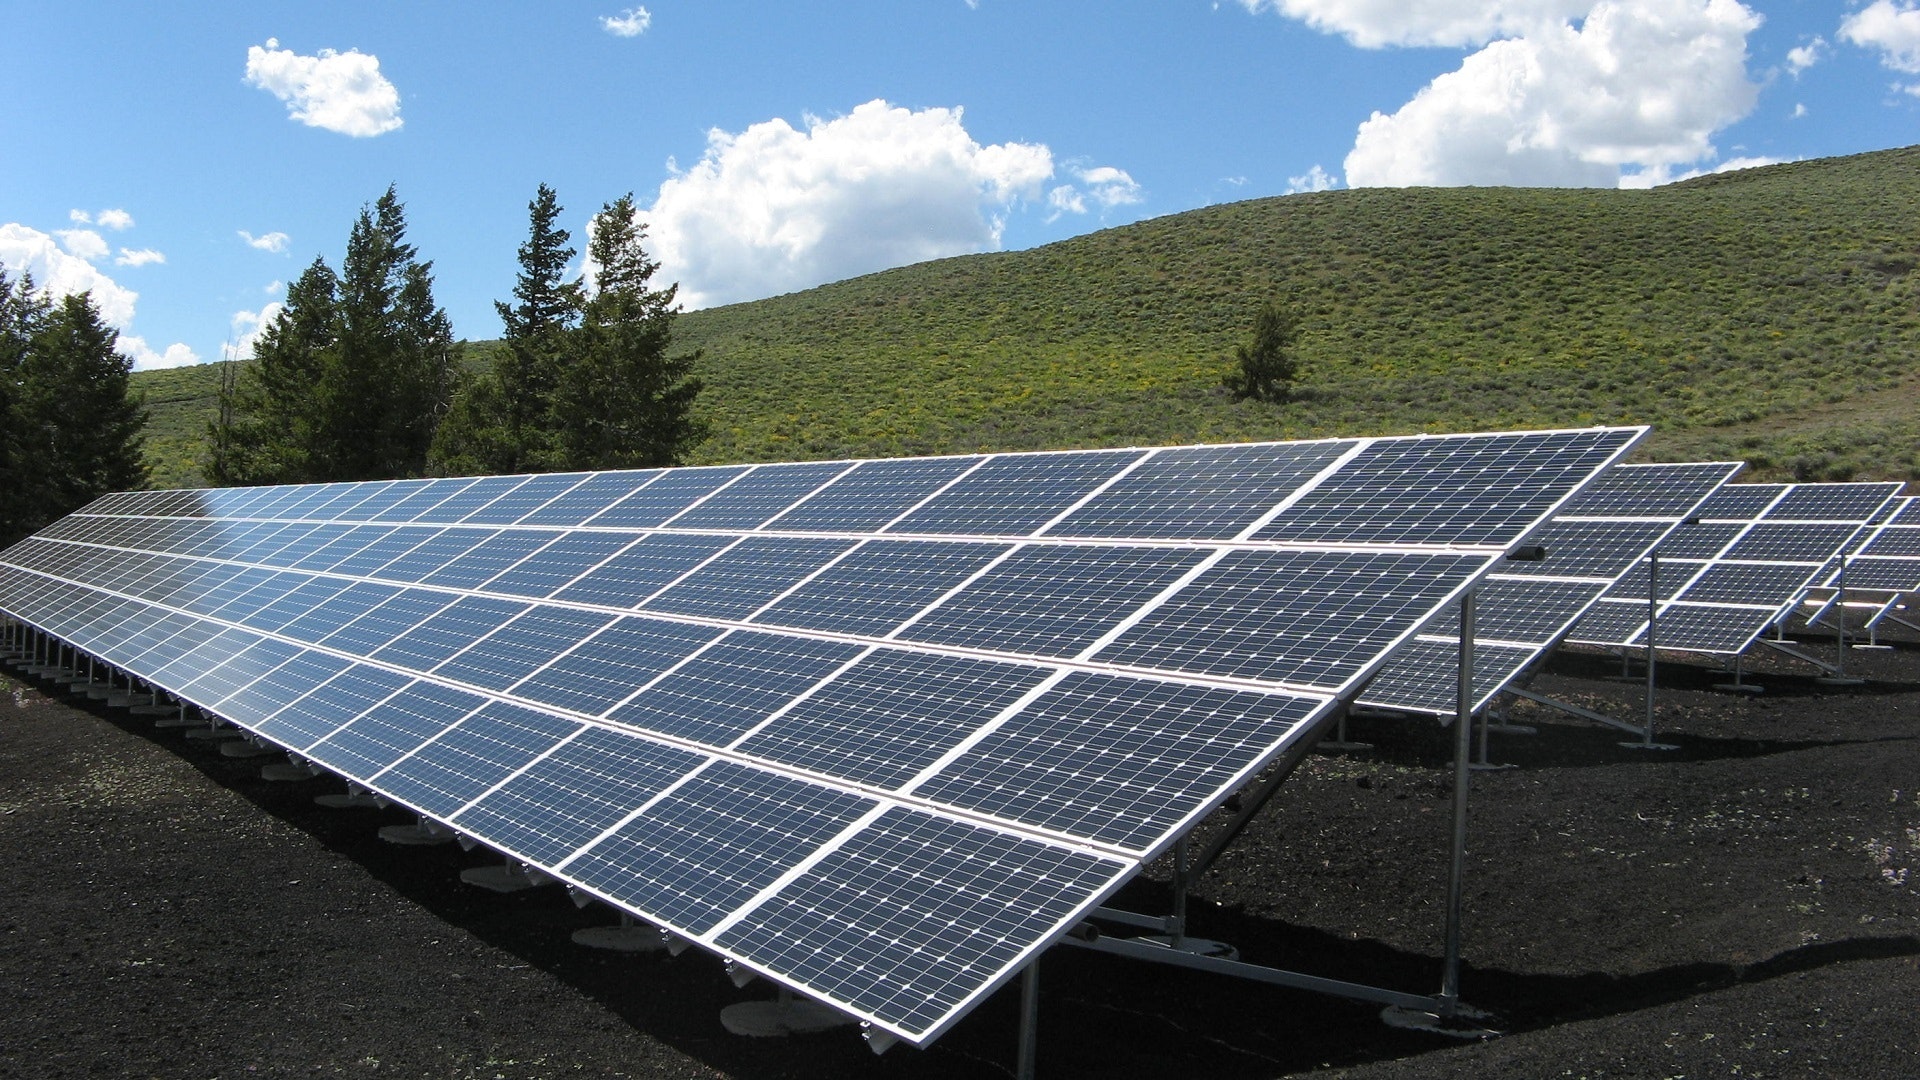 Instalación fotovoltaica y conectividad